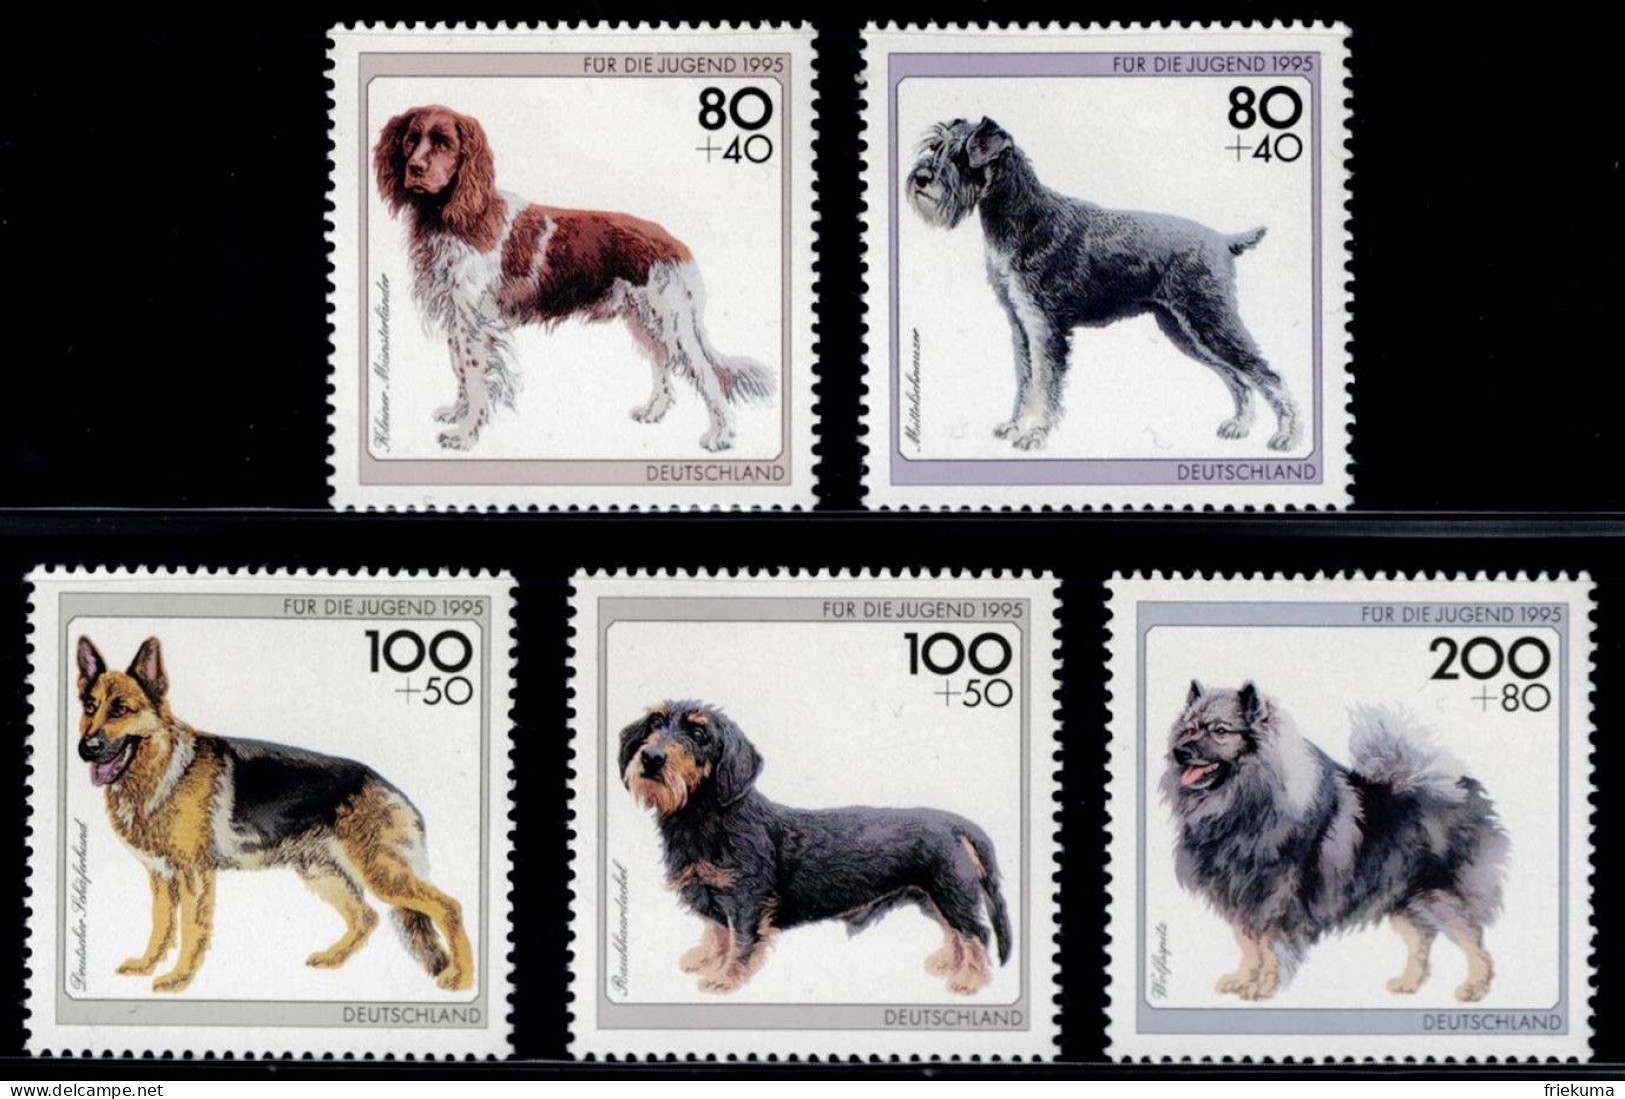 Bundesrepublik Deutschland 1995, Dogs: Small Münsterländer, Medium Schnauzer, Wolfspitz, Etc., MiNr. 1797-1801 - Dogs